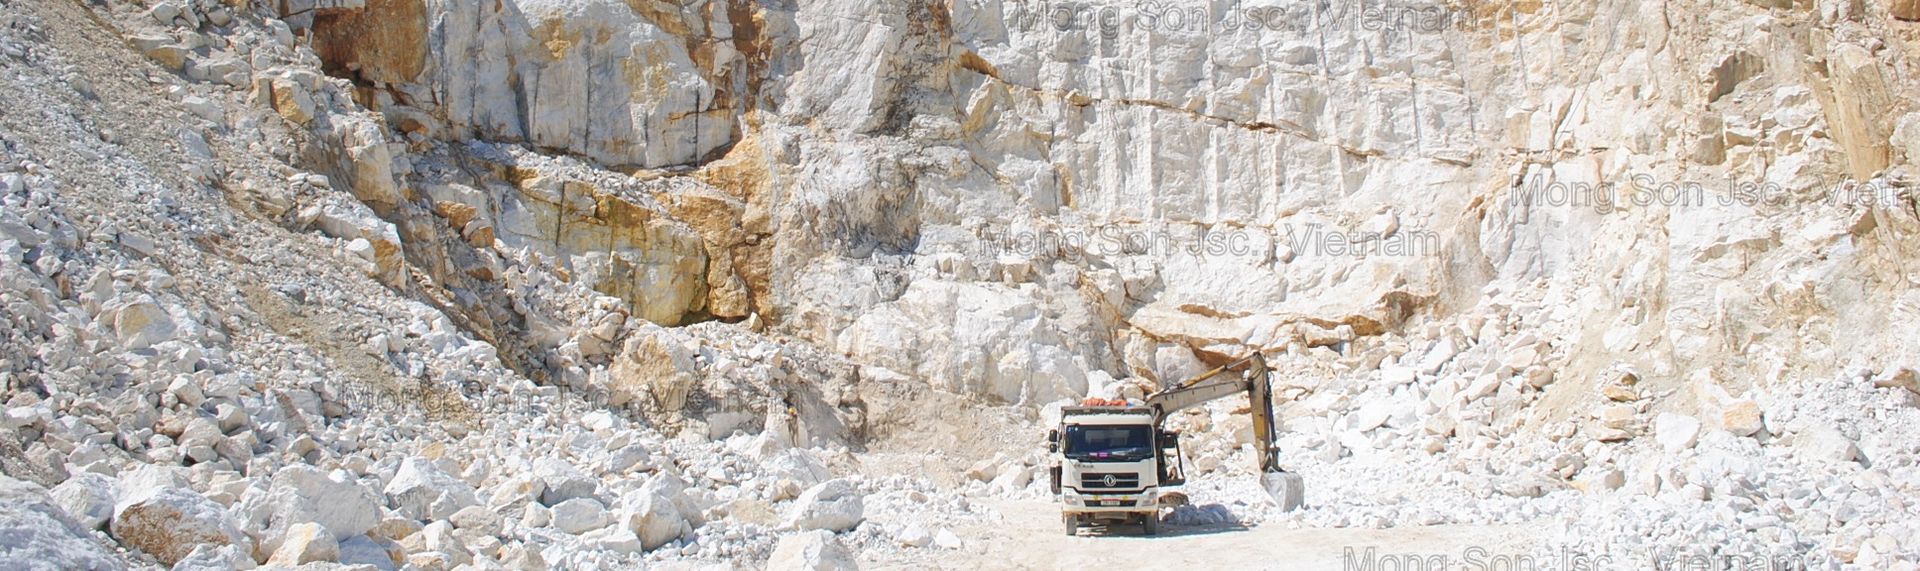 Mỏ đá vôi trắng Mông Sơn do Công ty CP Mông Sơn quản lý và khai thác theo giấy phép khai thác mỏ số 2010/GP-BTNMT, cấp bởi Bộ TNMT Việt Nam